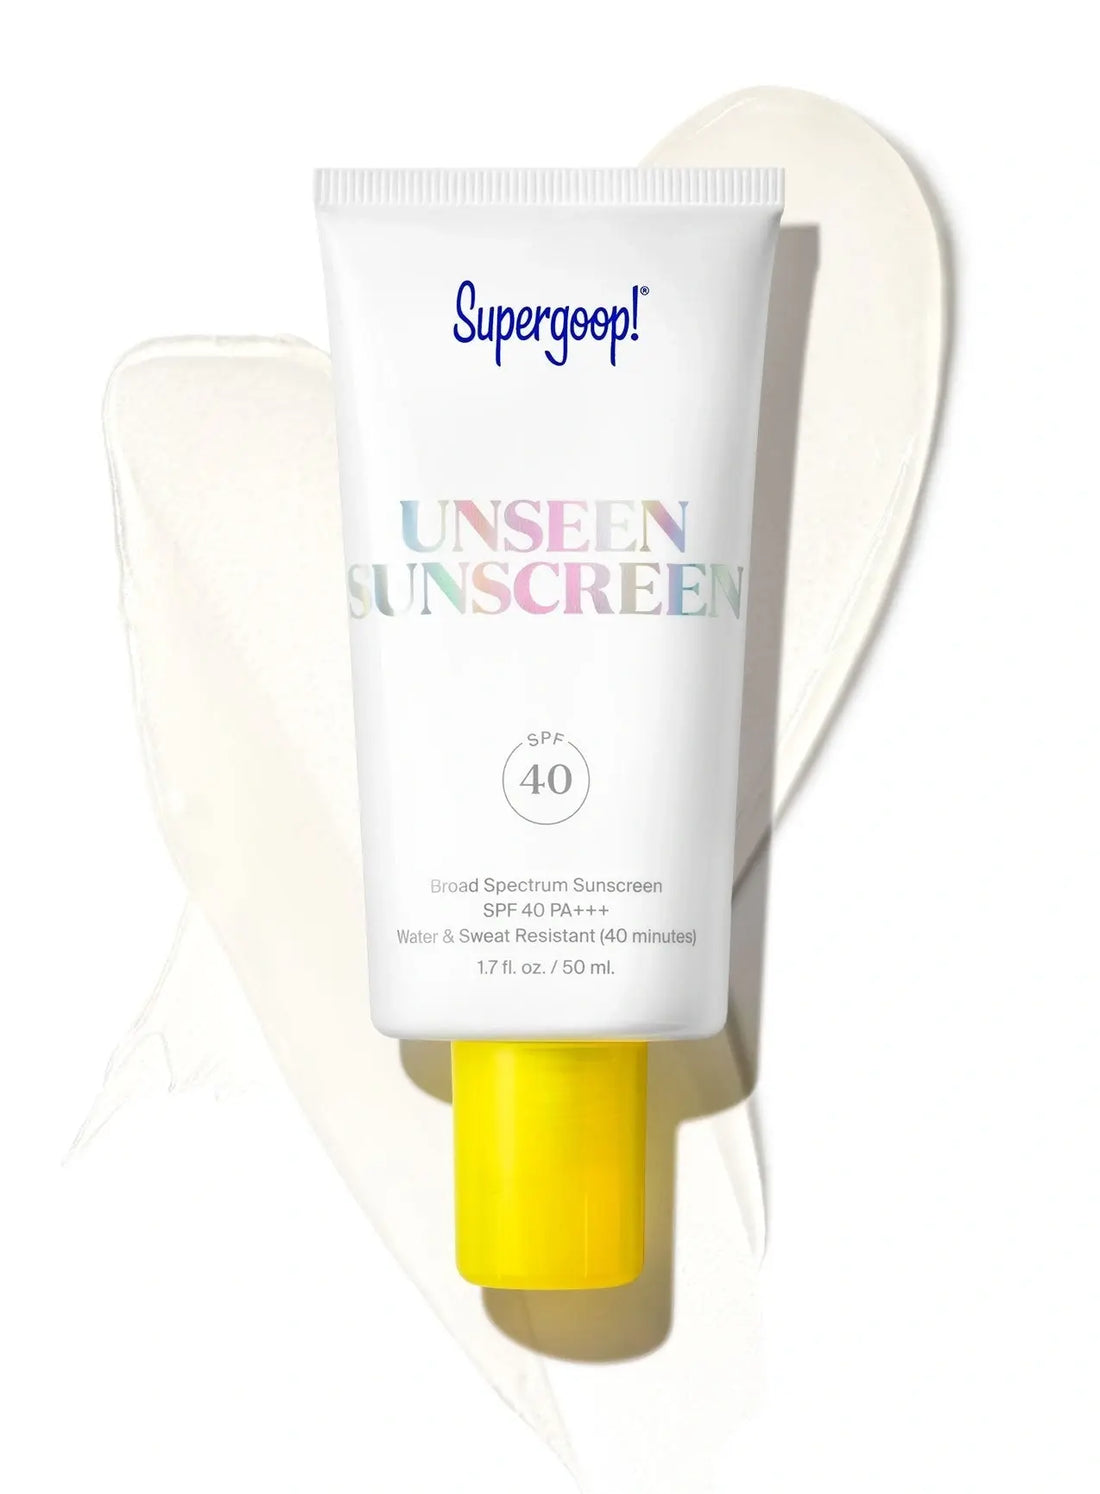 Supergoop Unseen Sunscreen SPF 40 full size